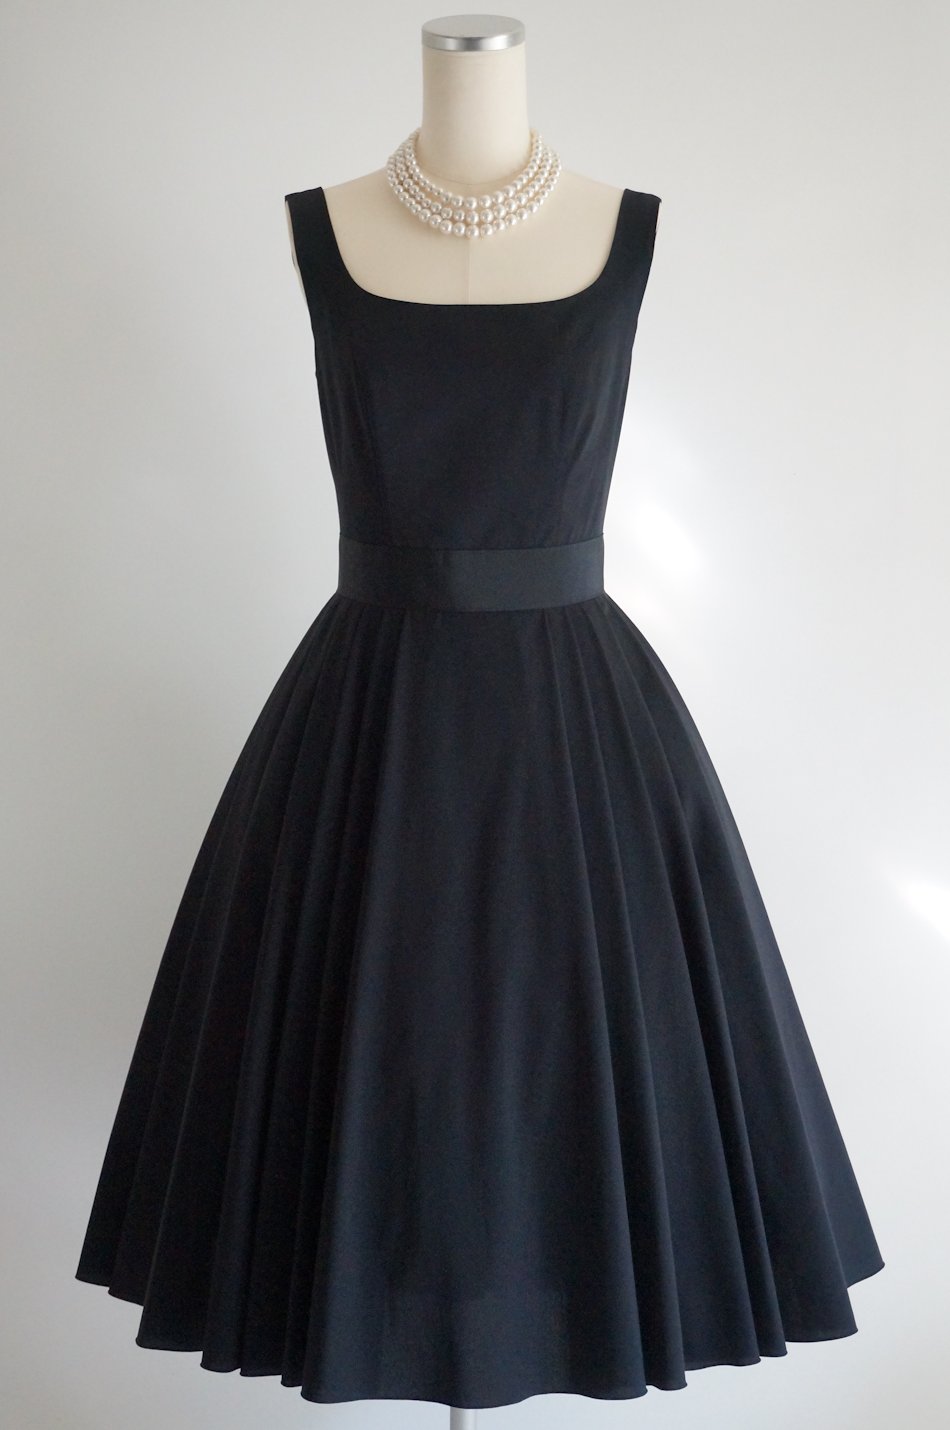 フォクシー プリーツフレアードレス ネイビー38 / レンタルリトルブラックドレス テン Rental Little Black Dress ten.